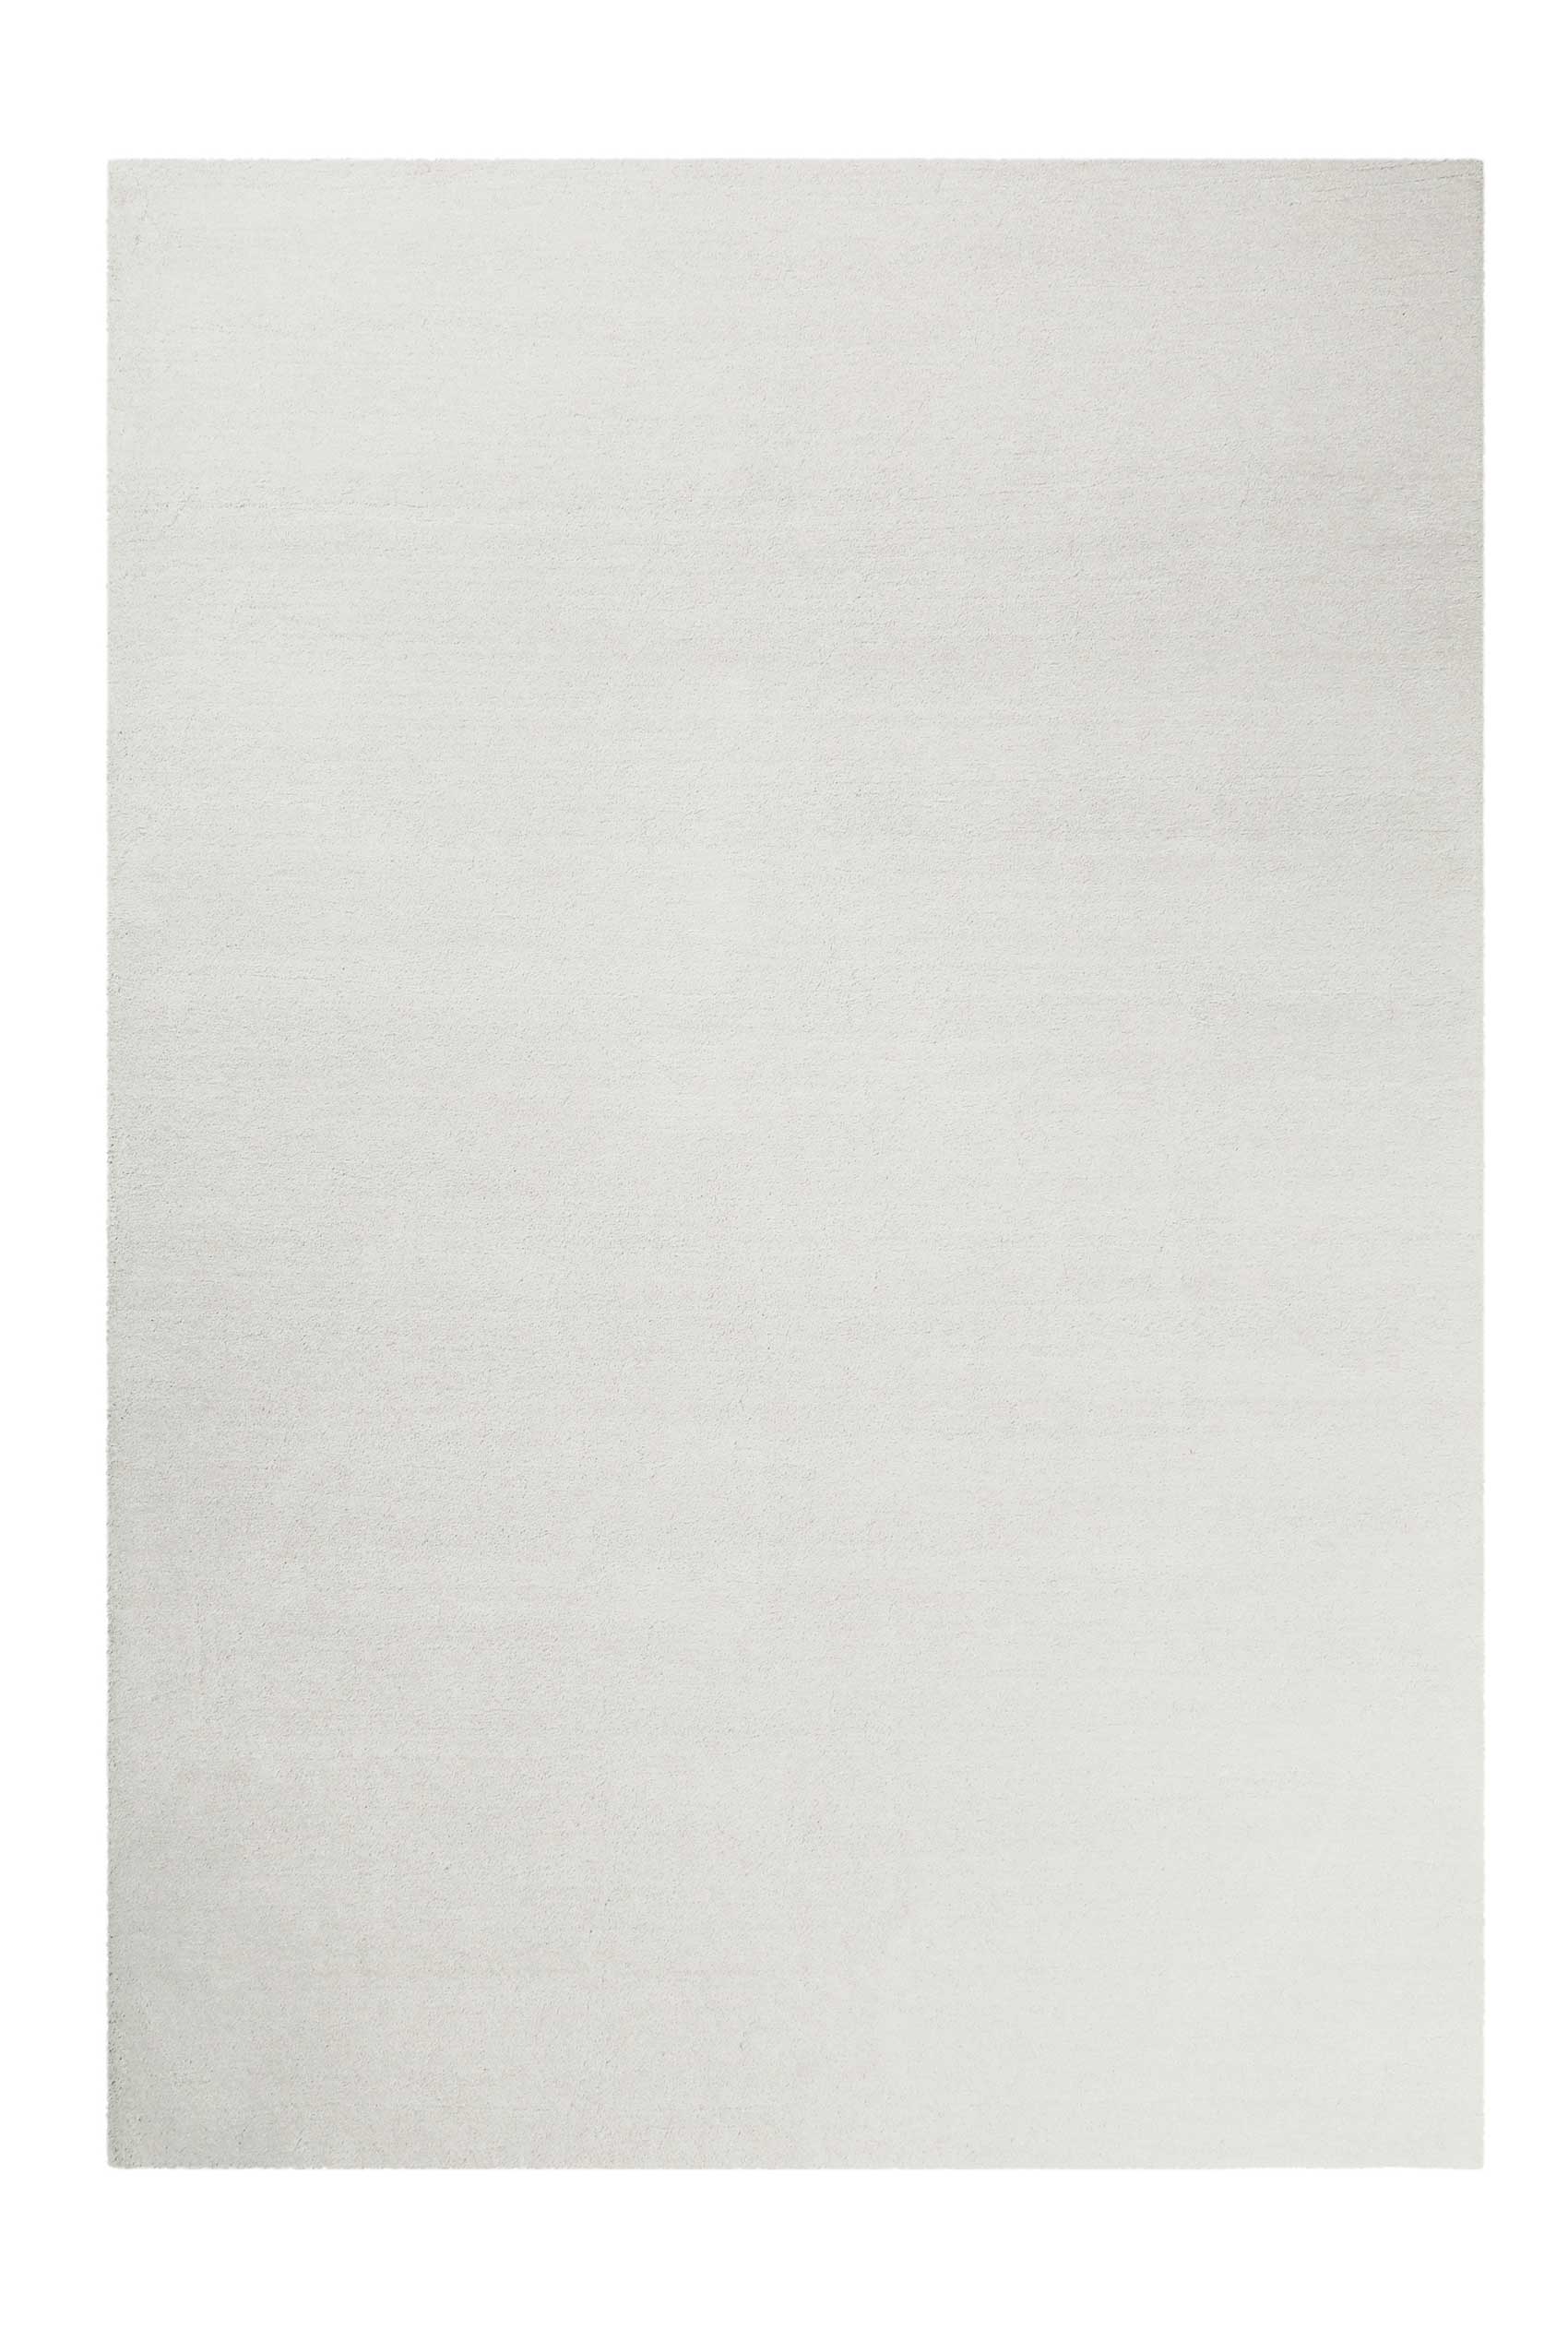 Tapis tufté mèches hautes gris blanc doux pour salon, chambre 230x160